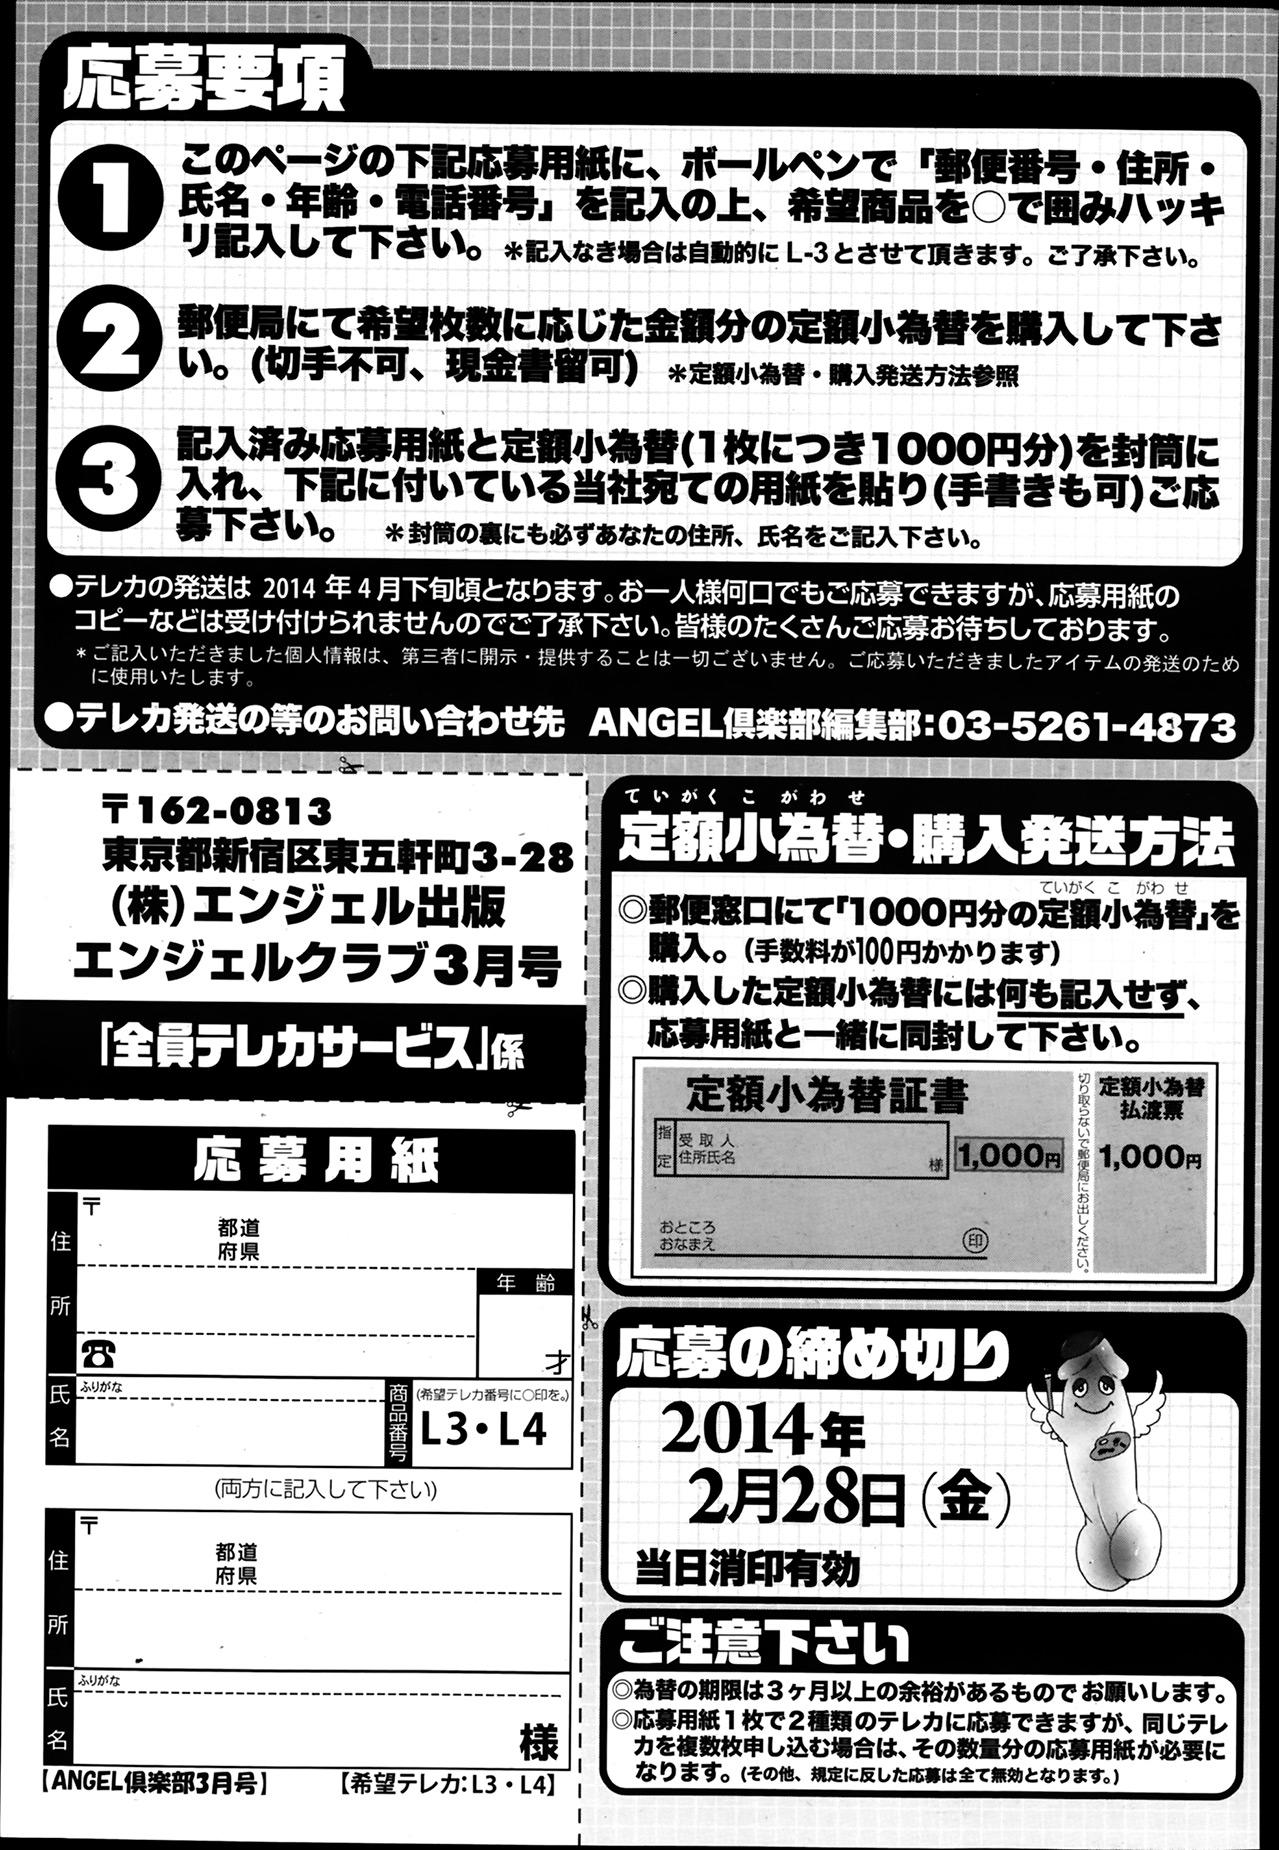 ANGEL Club 2014-03 206